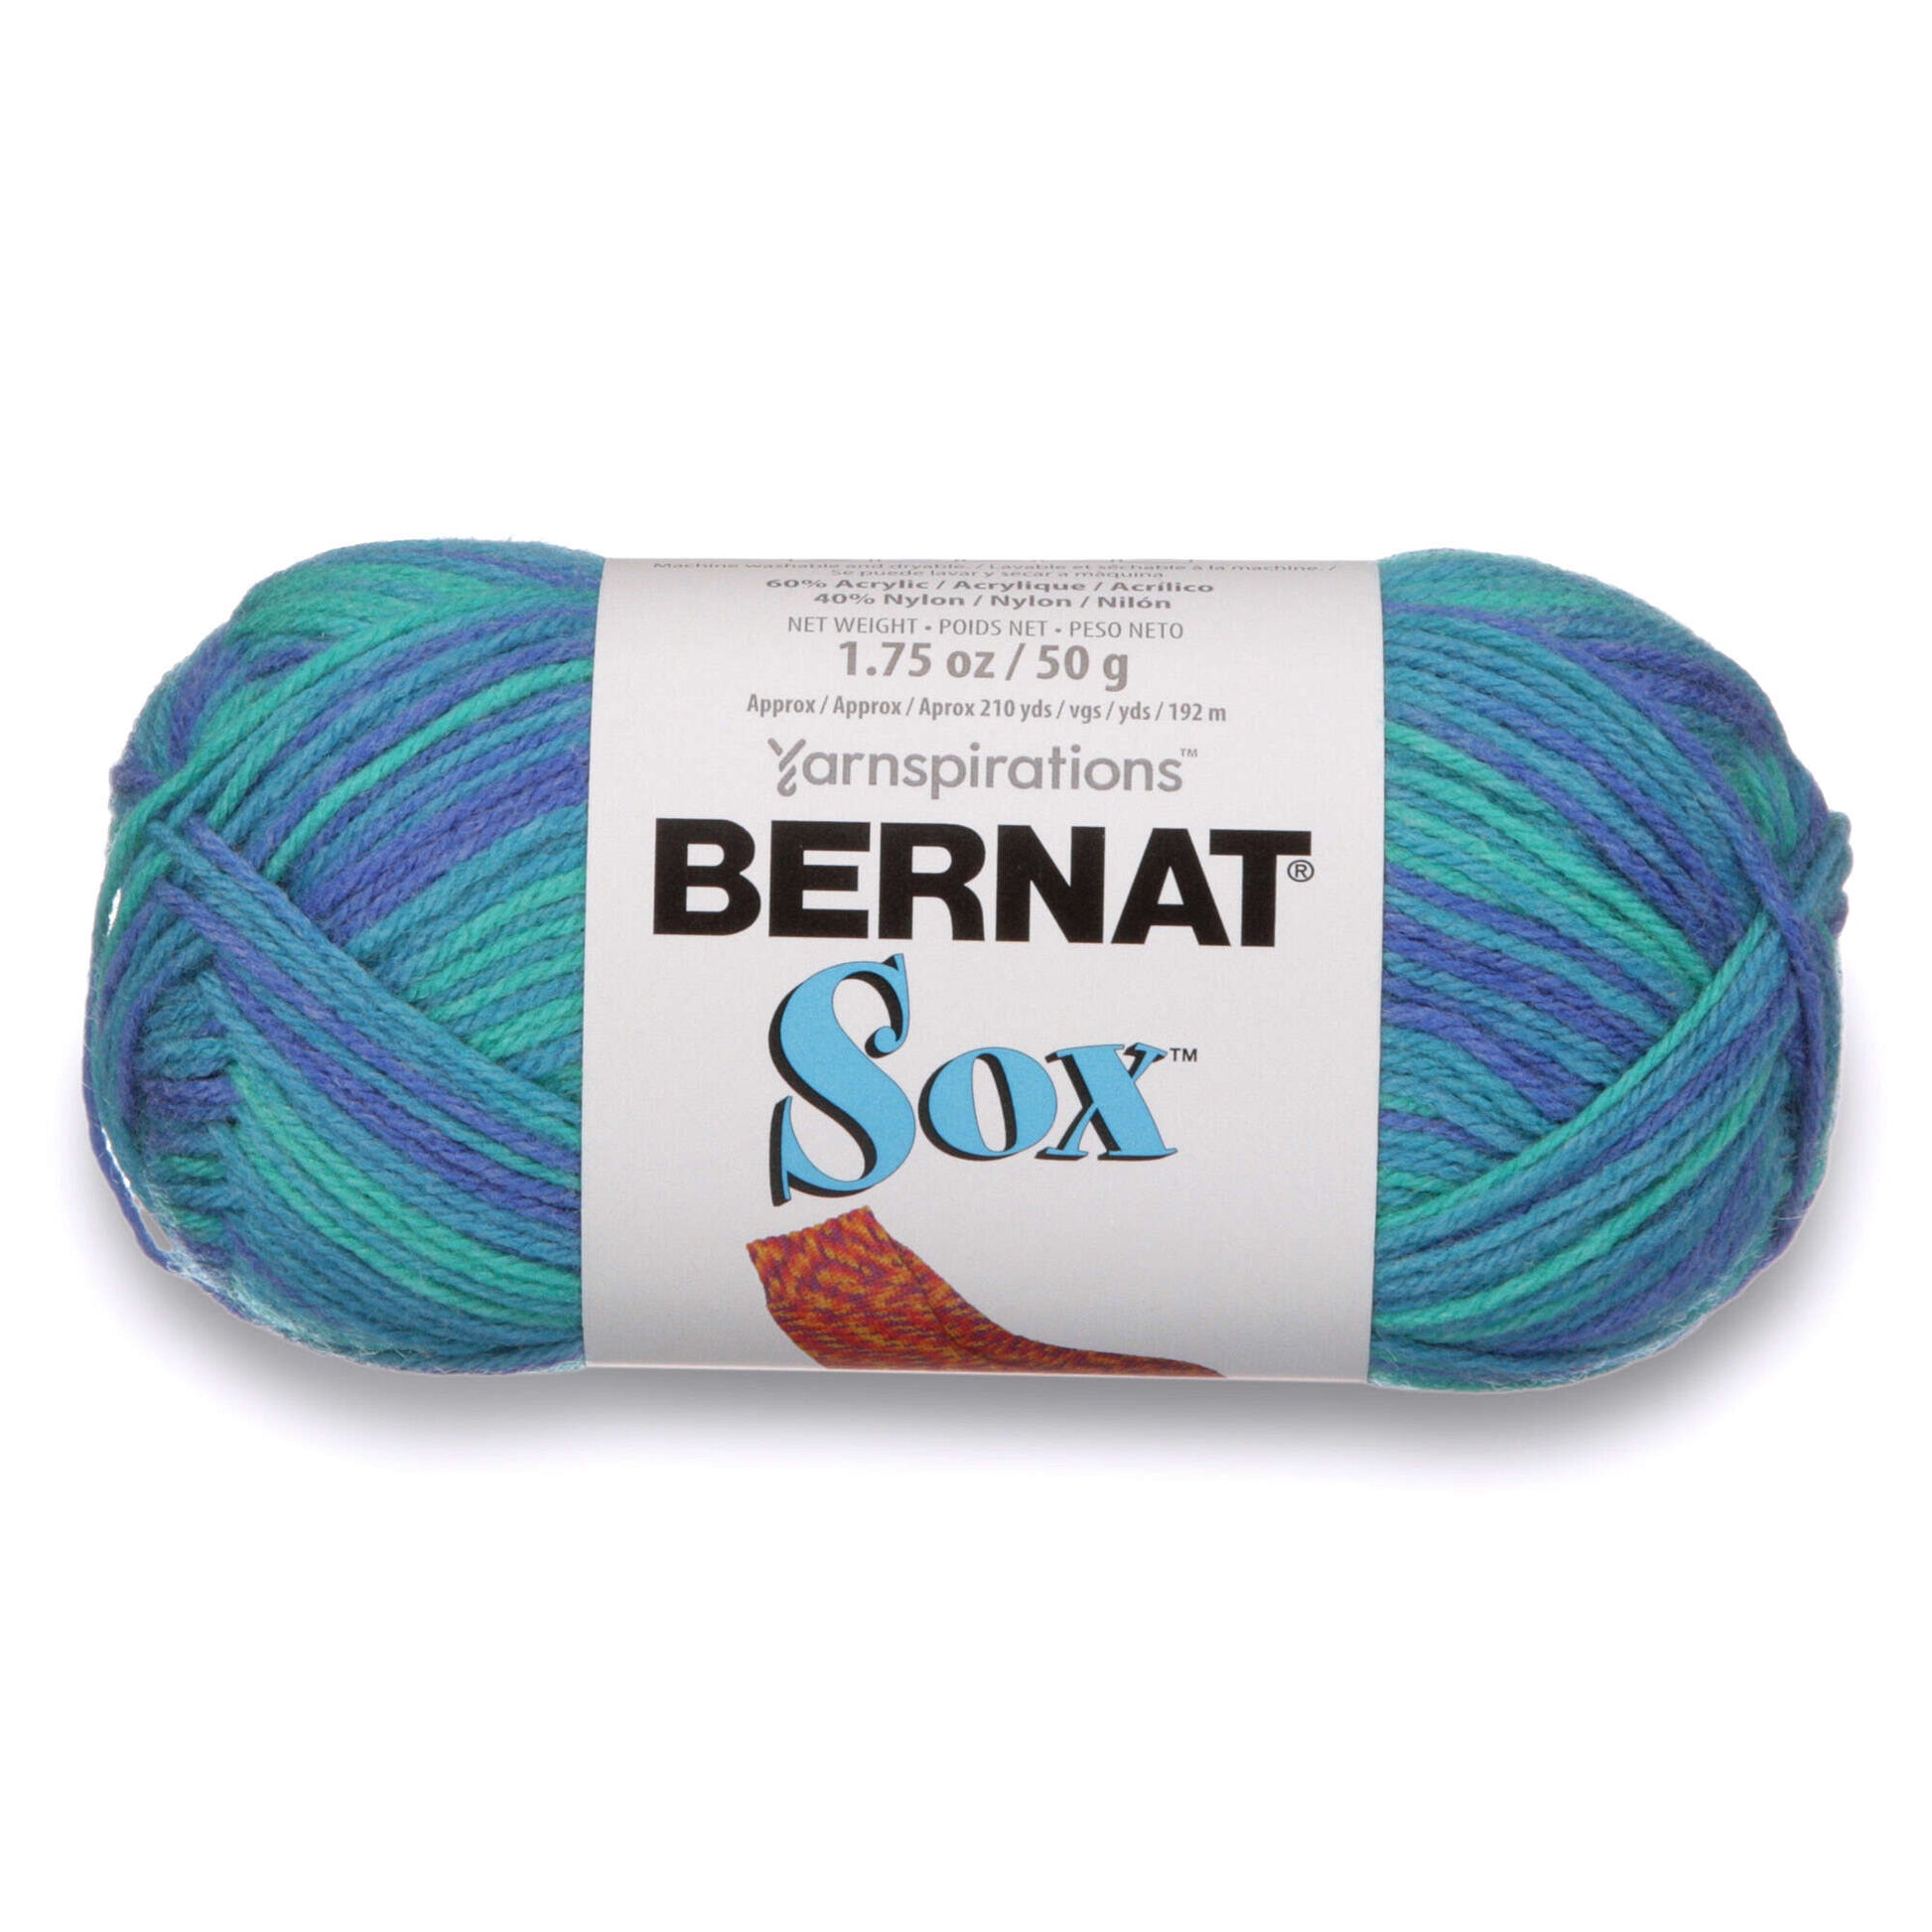 Bernat Sox Yarn - Discontinued Shades